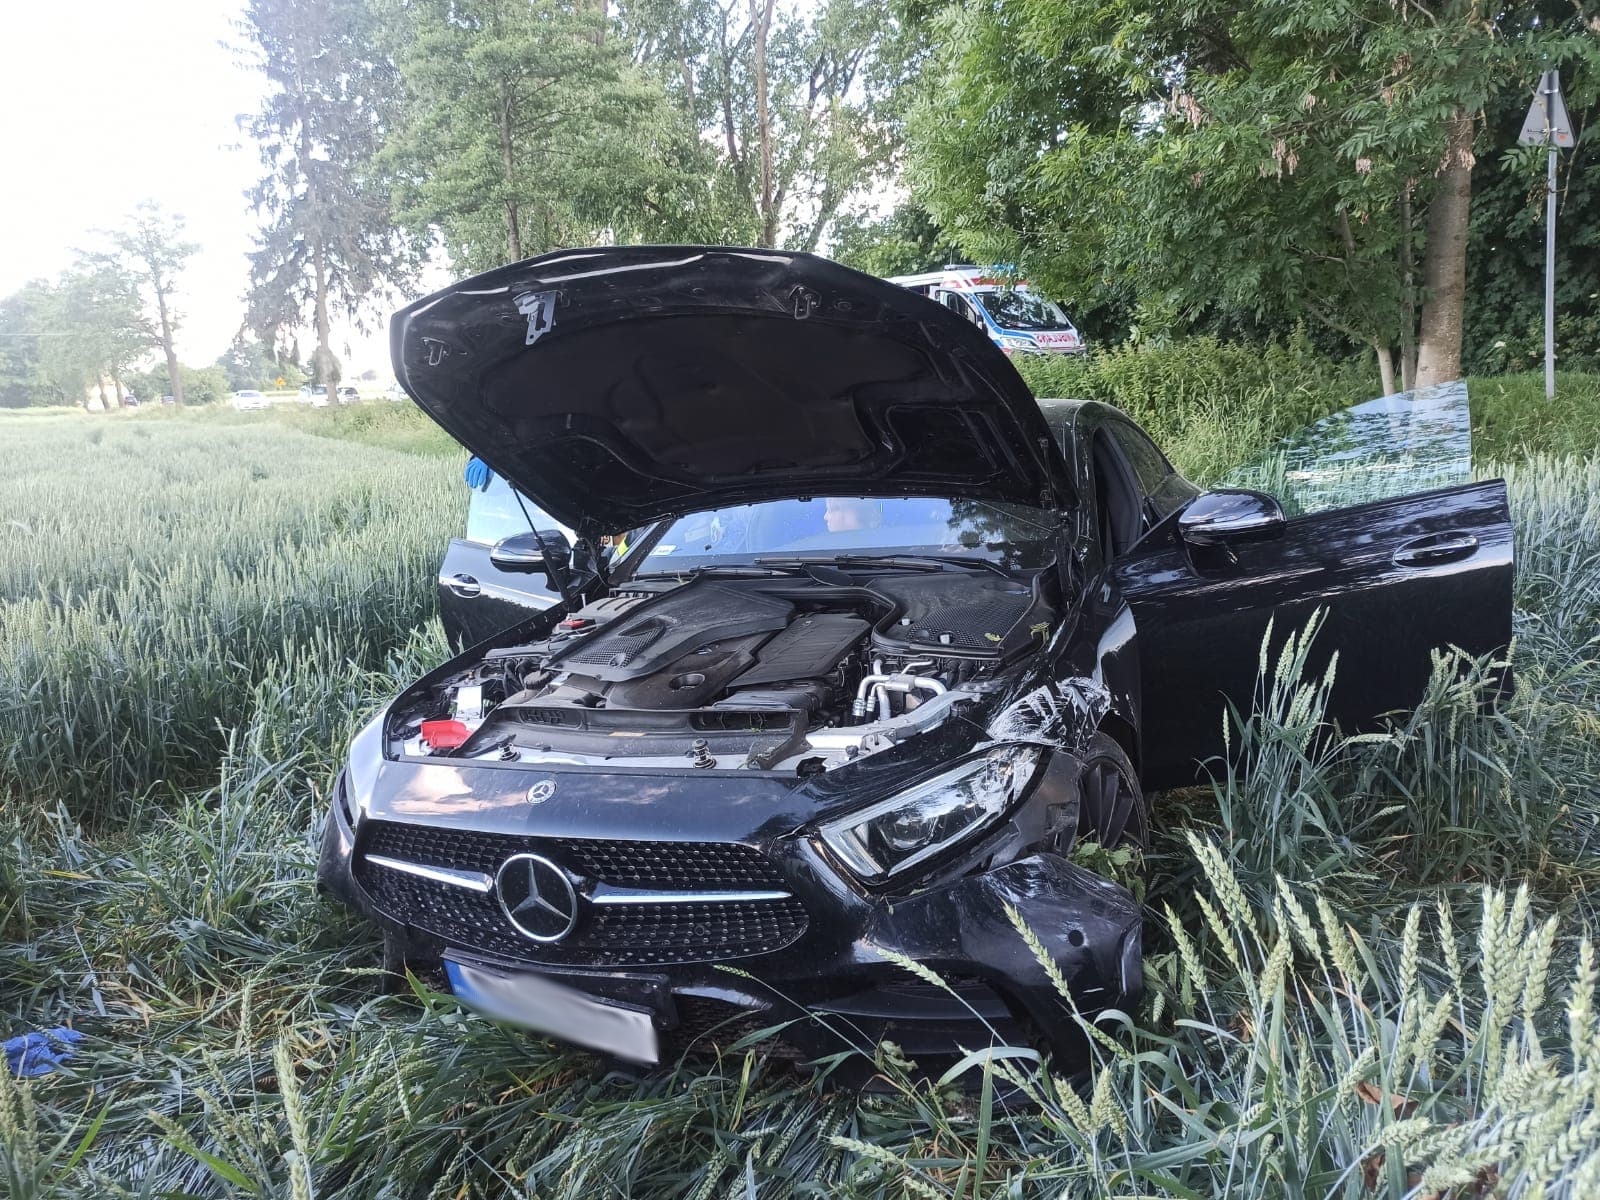 Groźny wypadek pomiędzy Bełżycami a Wojciechowem. Dwa auta rozbite, dwie osoby poszkodowane (zdjęcia)